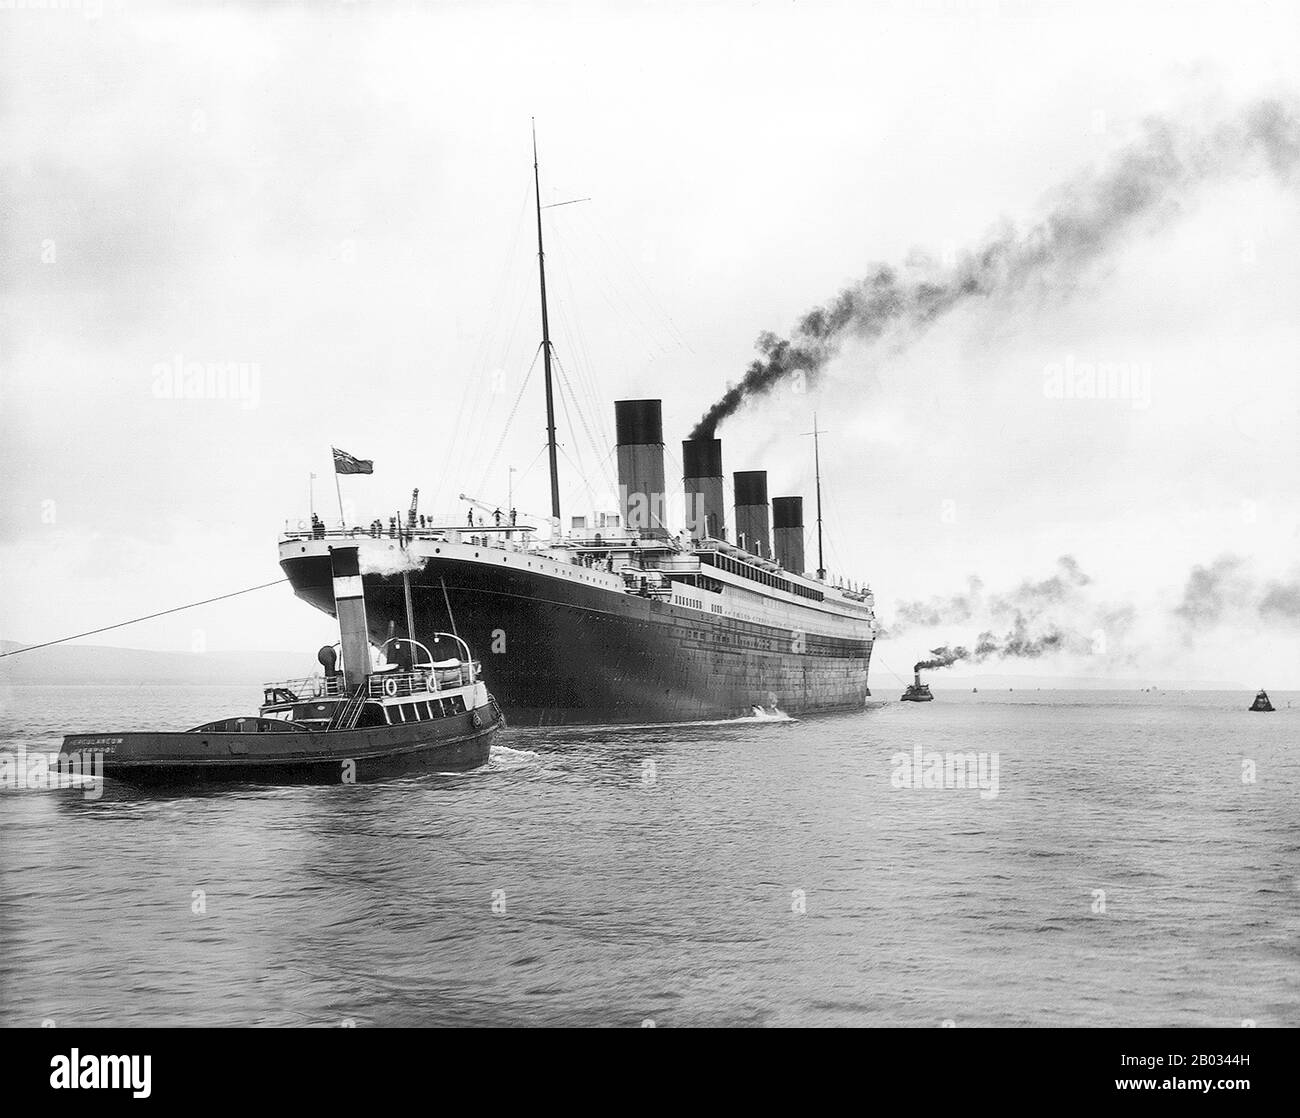 RMS Titanic war ein britischer Passagierliner, der am frühen Morgen des 15. April 1912 im Nordatlantik sank, nachdem sie während ihrer Jungfernfahrt von Southampton nach New York City mit einem Eisberg kollidierte. Von den 2.224 Passagieren und der Besatzung an Bord starben mehr als 1.500 bei der Versenkung, was sie zu einer der tödlichsten kommerziellen friedensstiftenden Schiffskatastrophen in der modernen Geschichte machte. Die RMS Titanic war das damals größte Schiff auf dem Wasser, als sie in Dienst gestellt wurde. Sie war die zweite von drei Ozeanlinern der Olympia-Klasse, die von der White Star Line betrieben wurden und von der Werft Harland and Wolff in Belfast gebaut wurden. Stockfoto